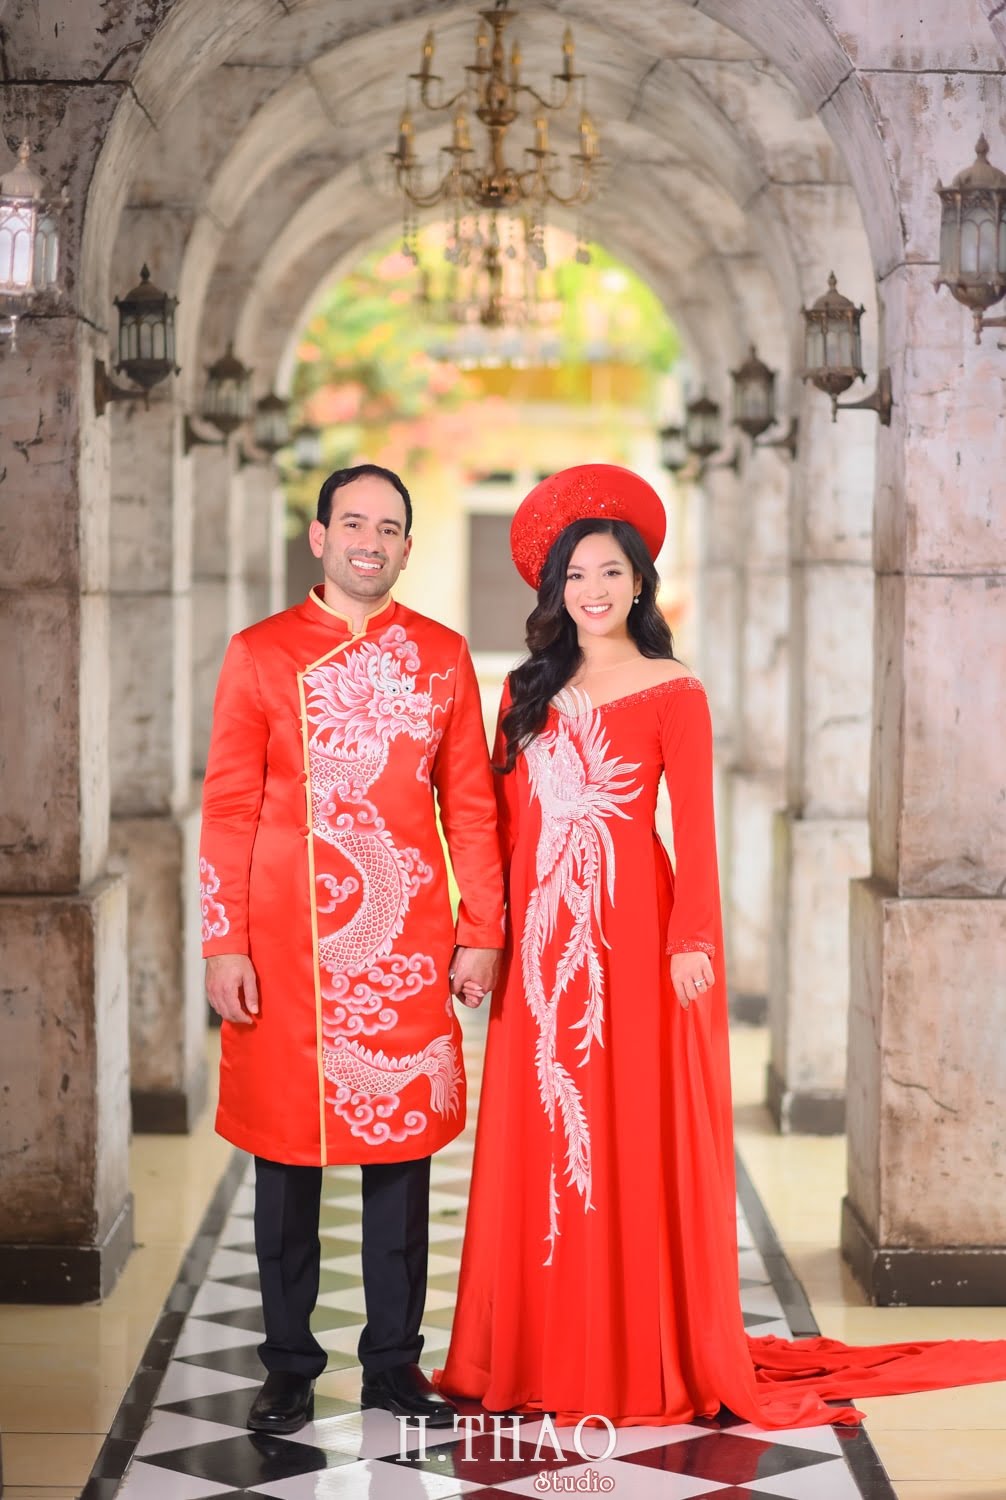 Anh couple 13 min - Bộ ảnh cưới áo dài truyền thống theo phong cách Việt đẹp – HThao Studio